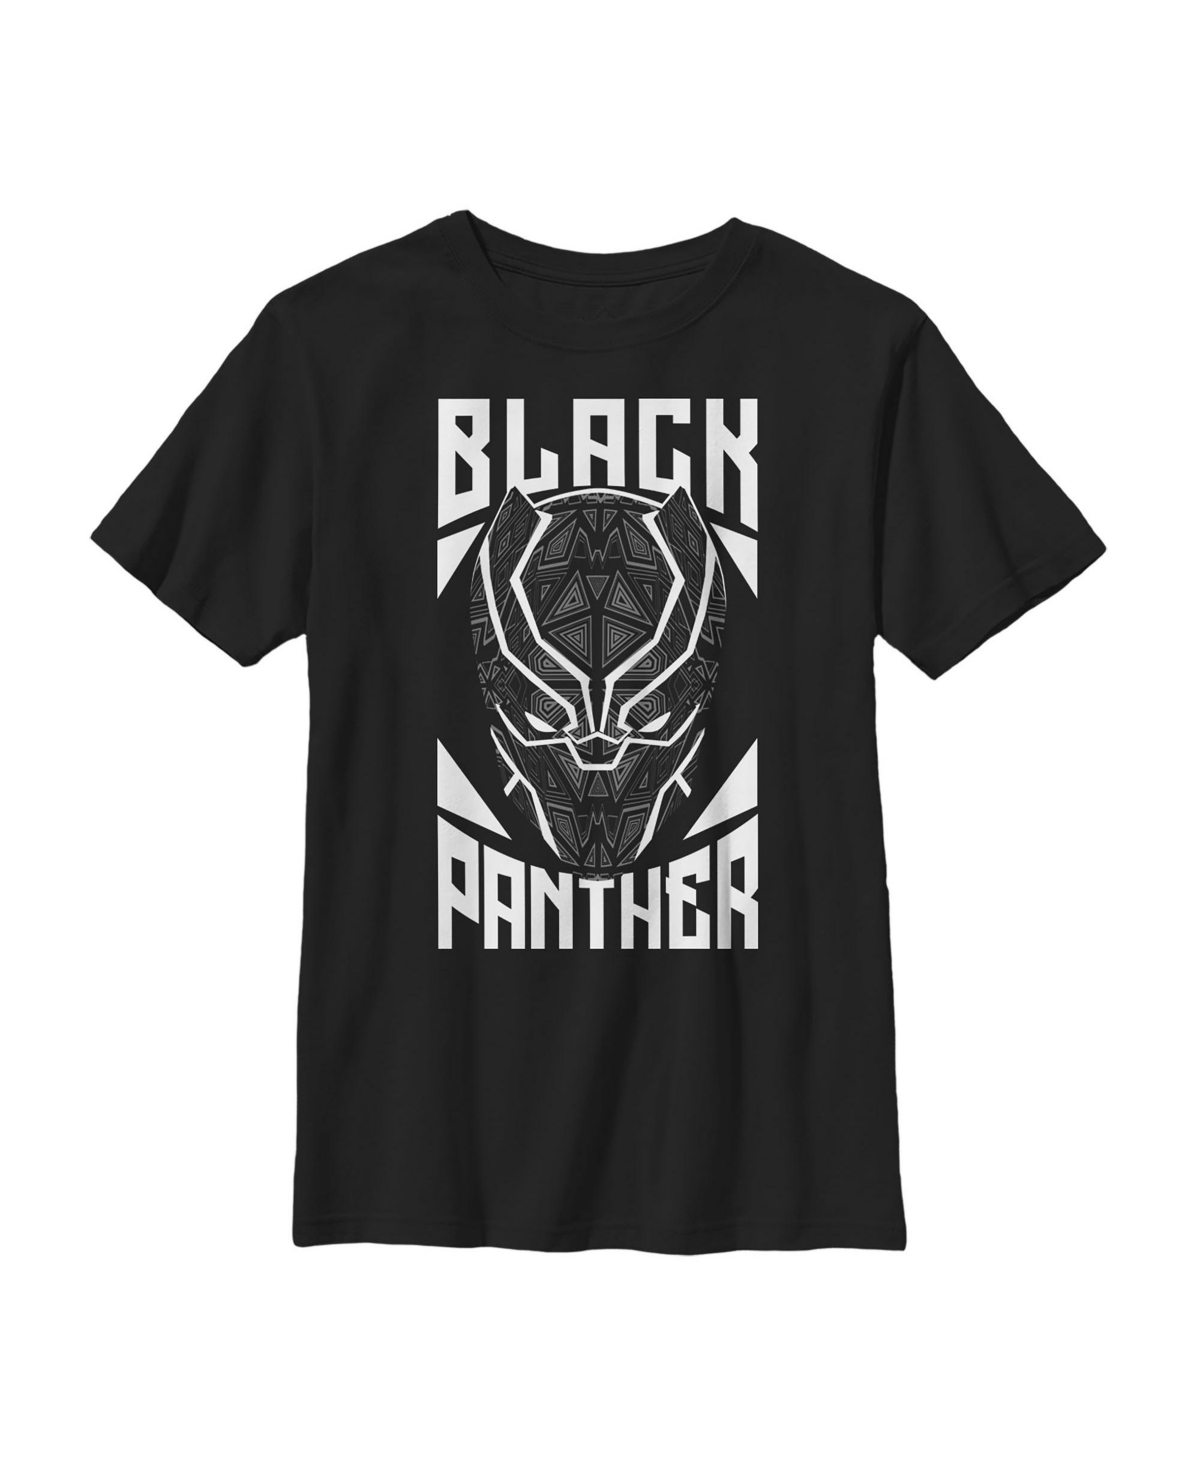 Boy's Marvel Black Panther Adorned Mask Child T-Shirt - Black